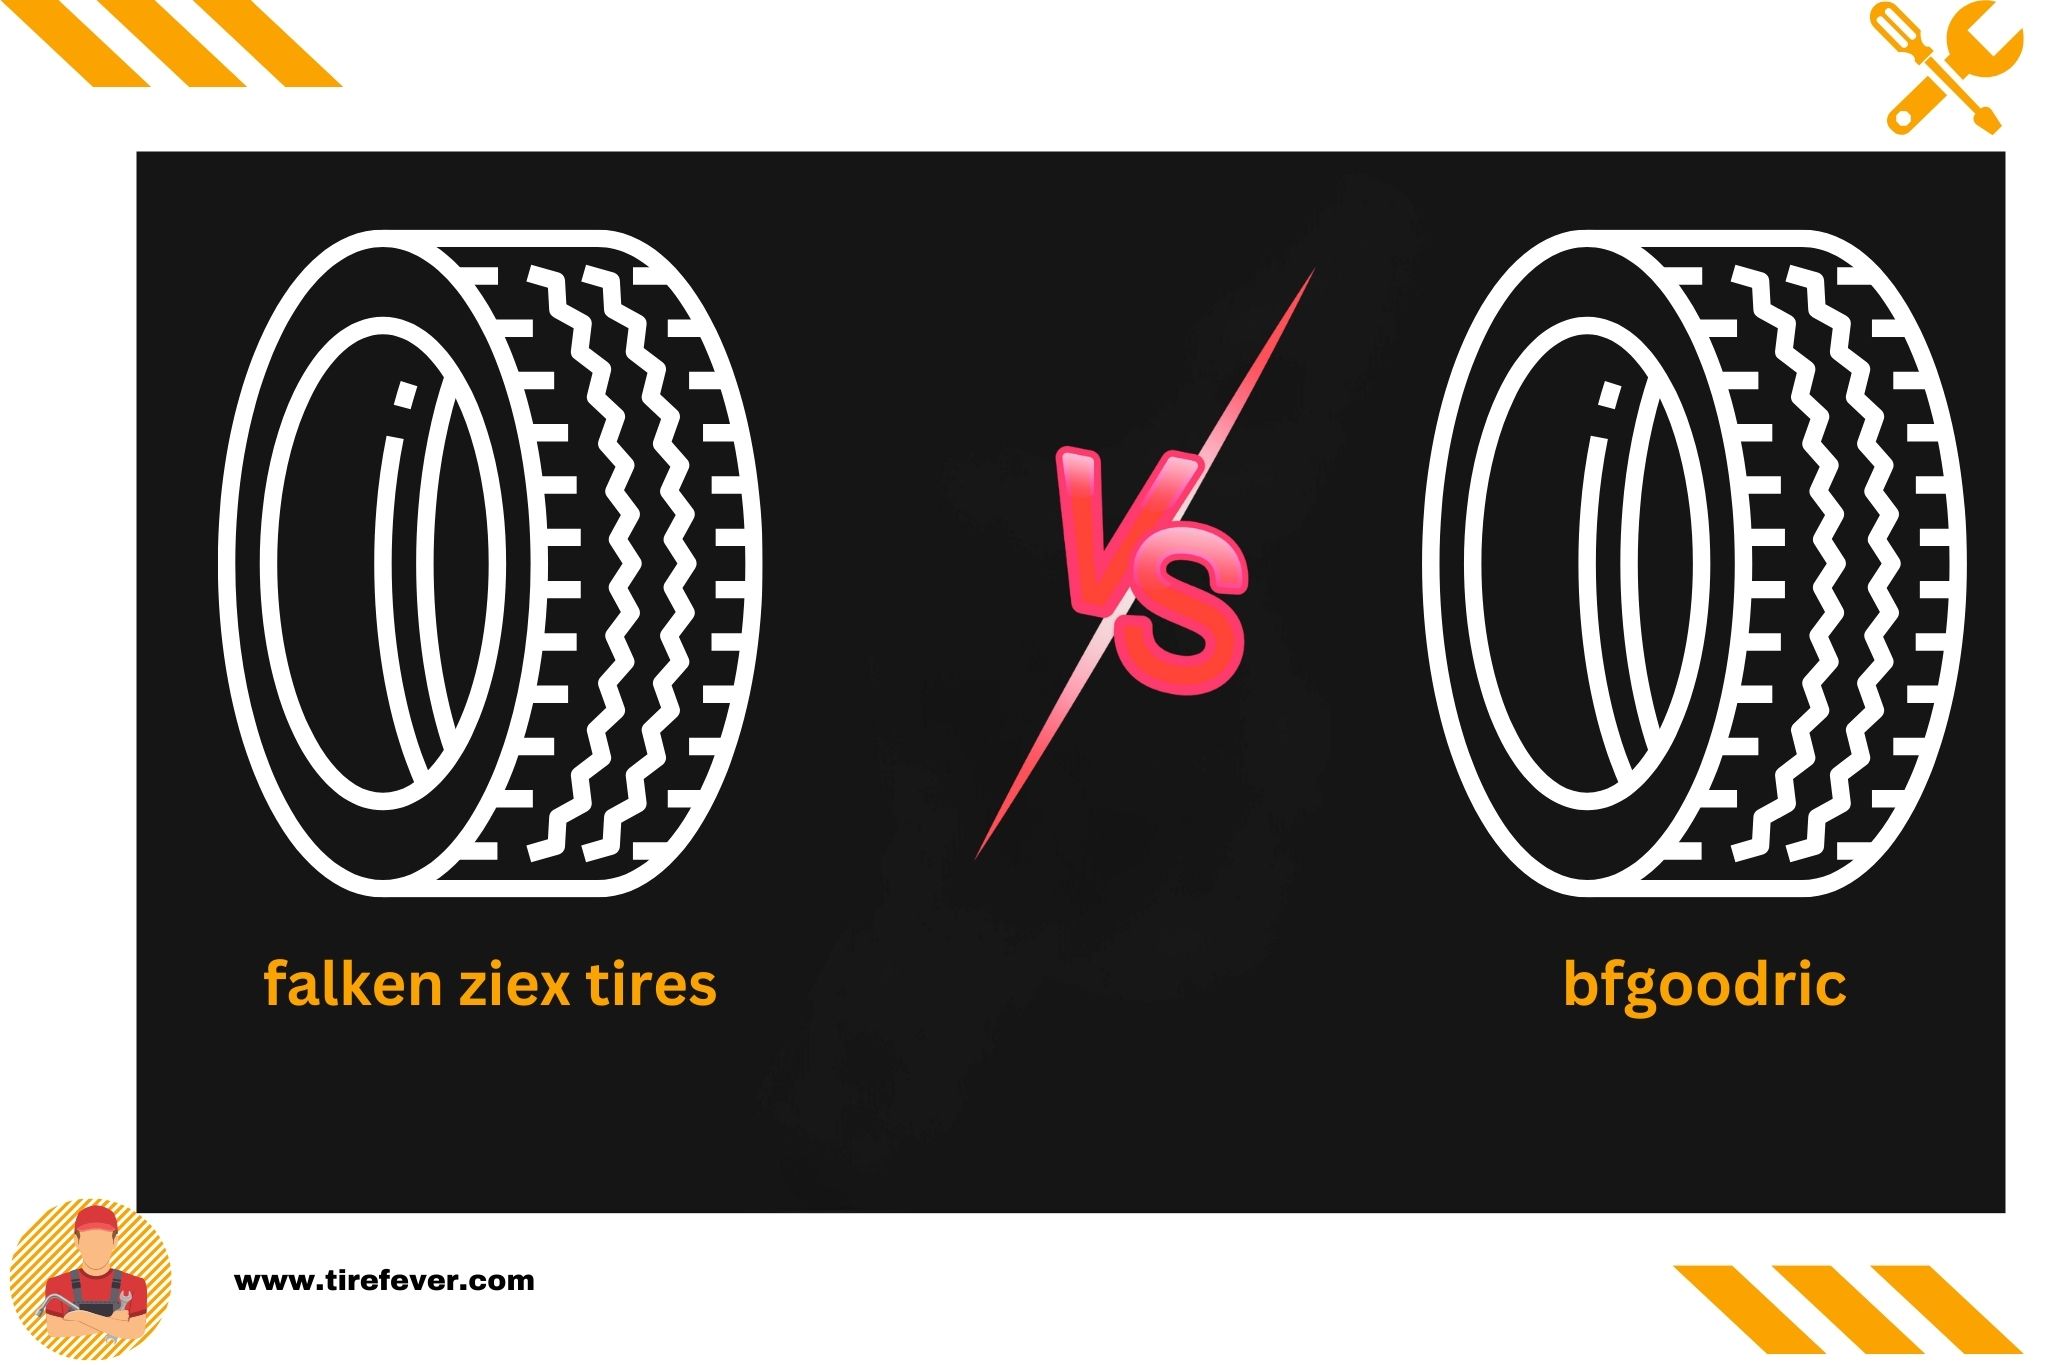 falken ziex tires vs bfgoodric